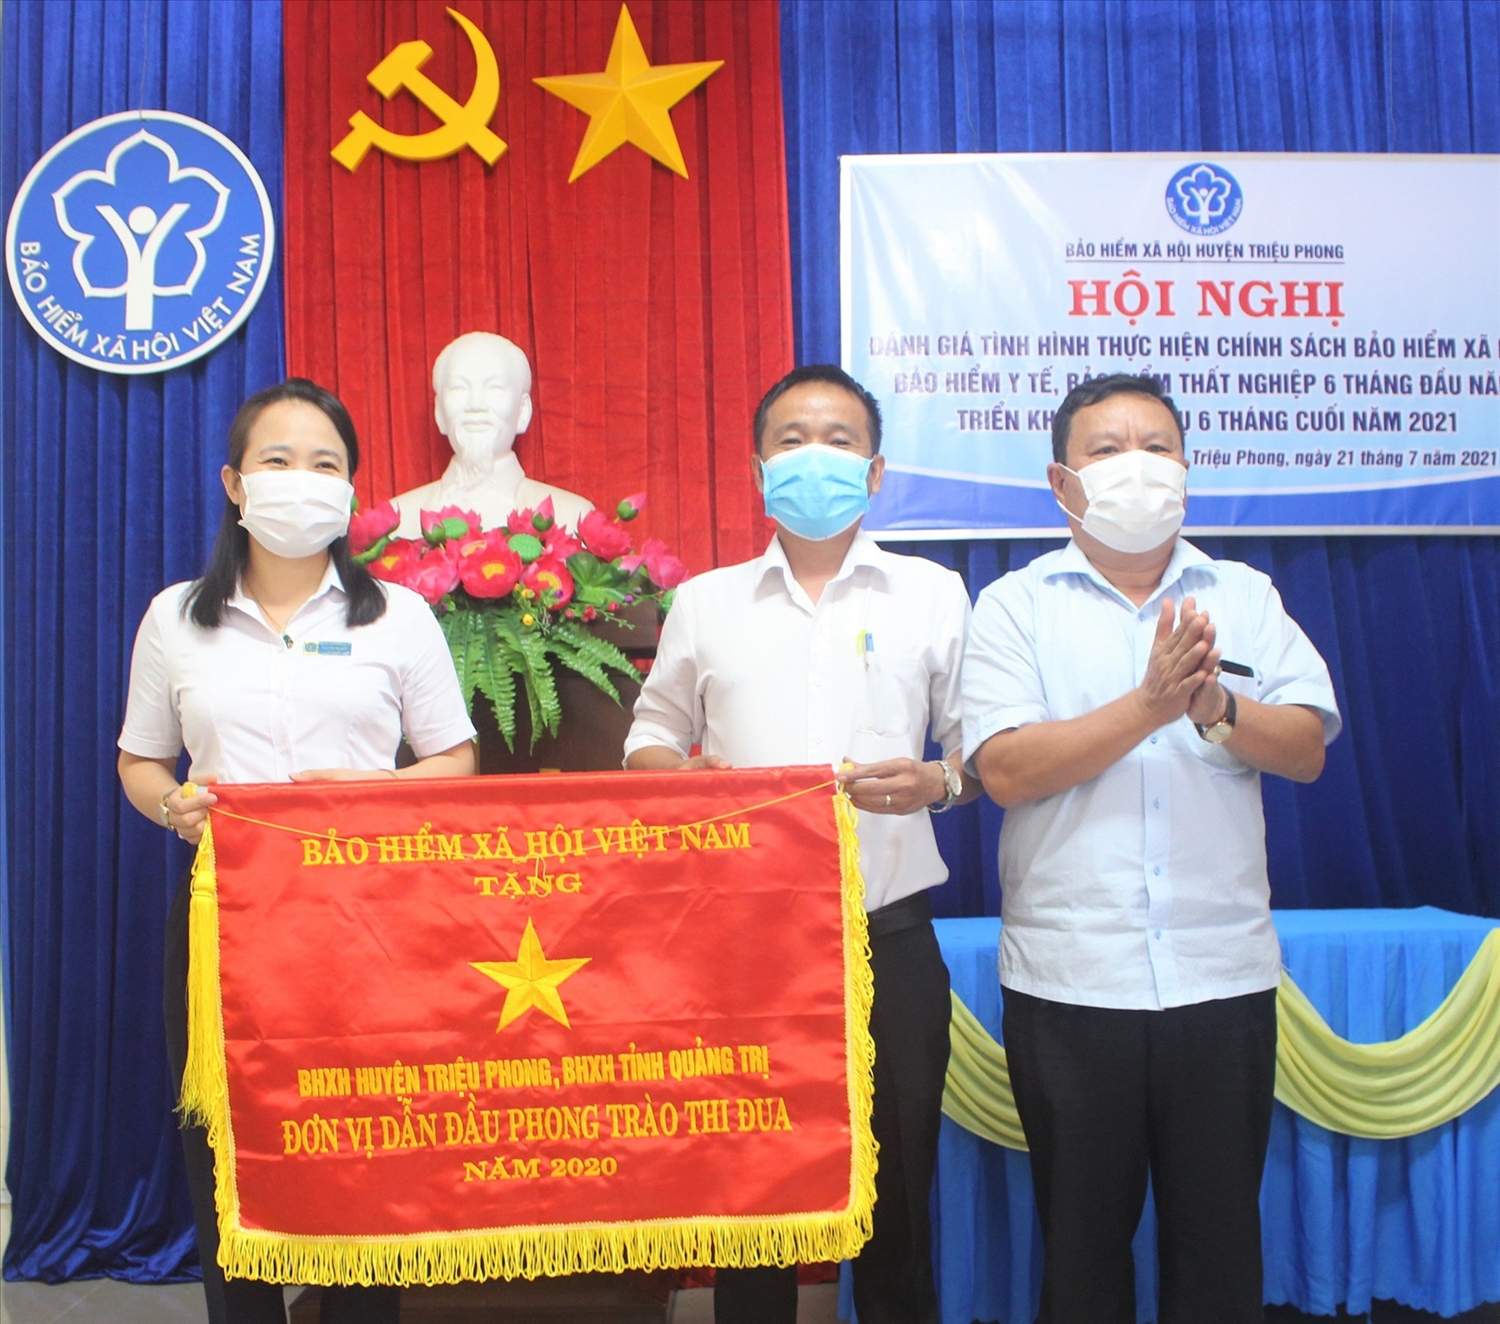 Bảo hiểm xã hội huyện Vĩnh Linh vinh dự nhận cờ thi đua của Bảo hiểm xã hội Việt Nam